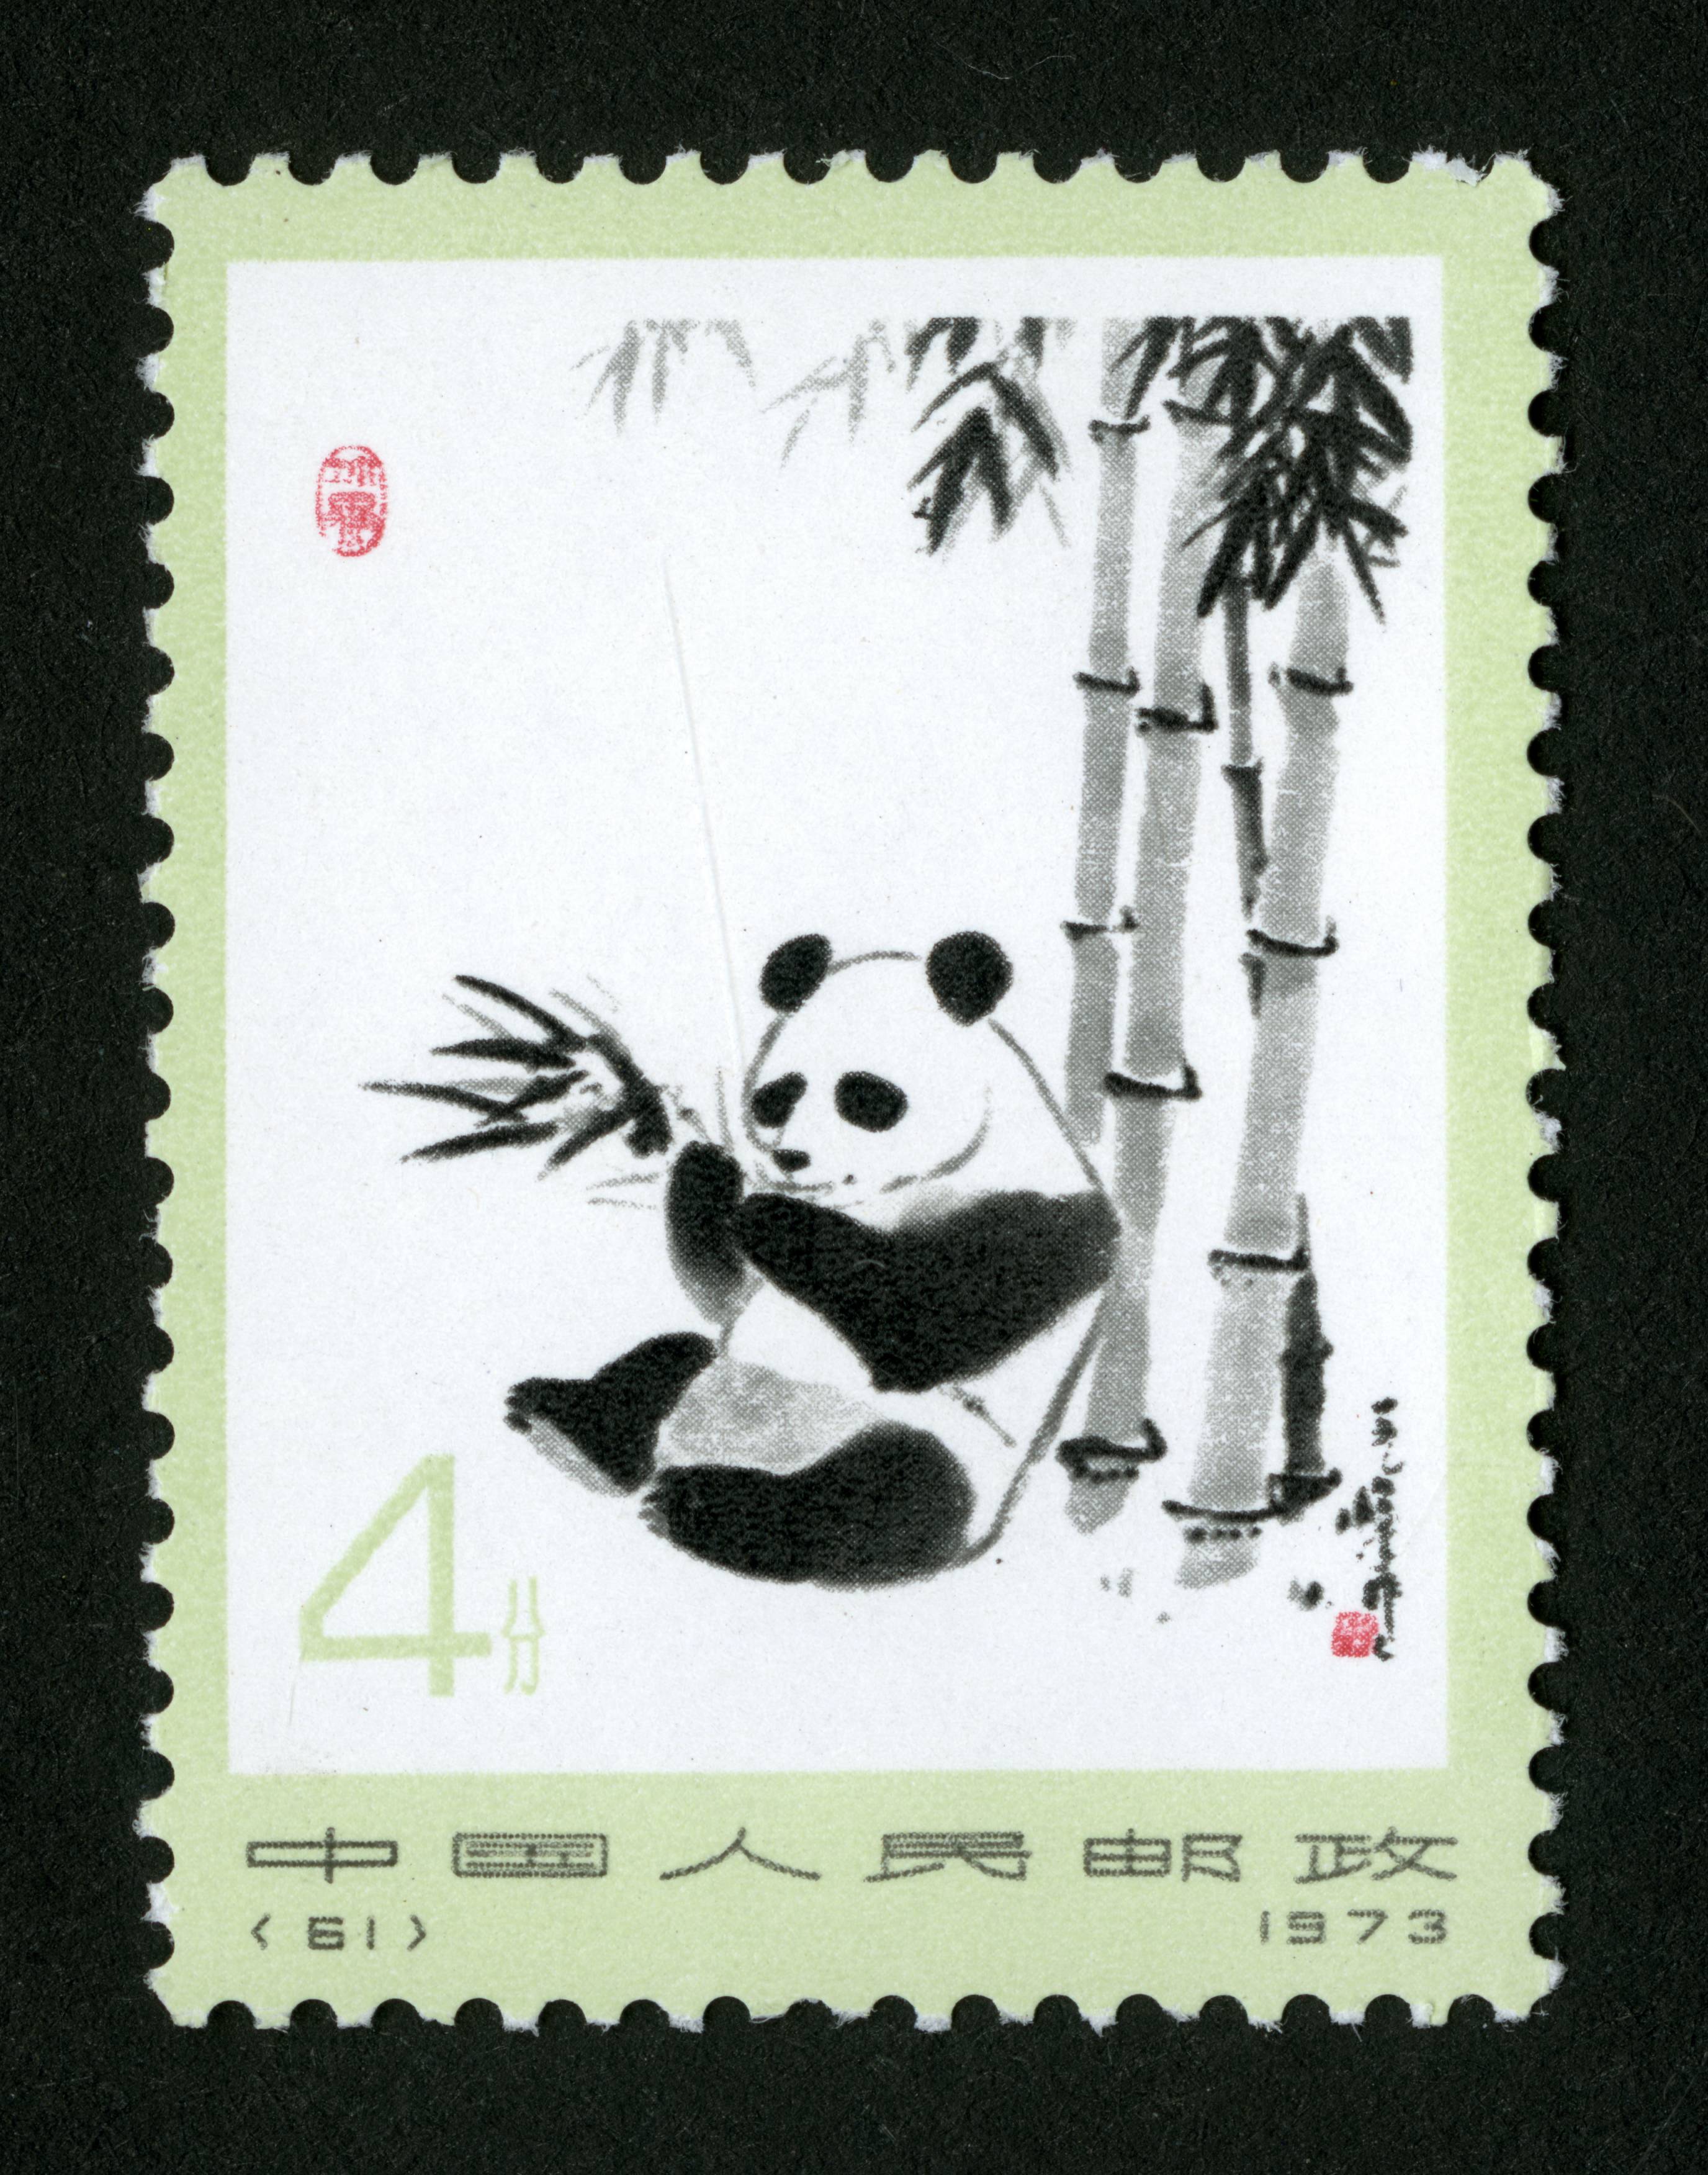 动植物 邮票名称:熊猫 发行日期:1973